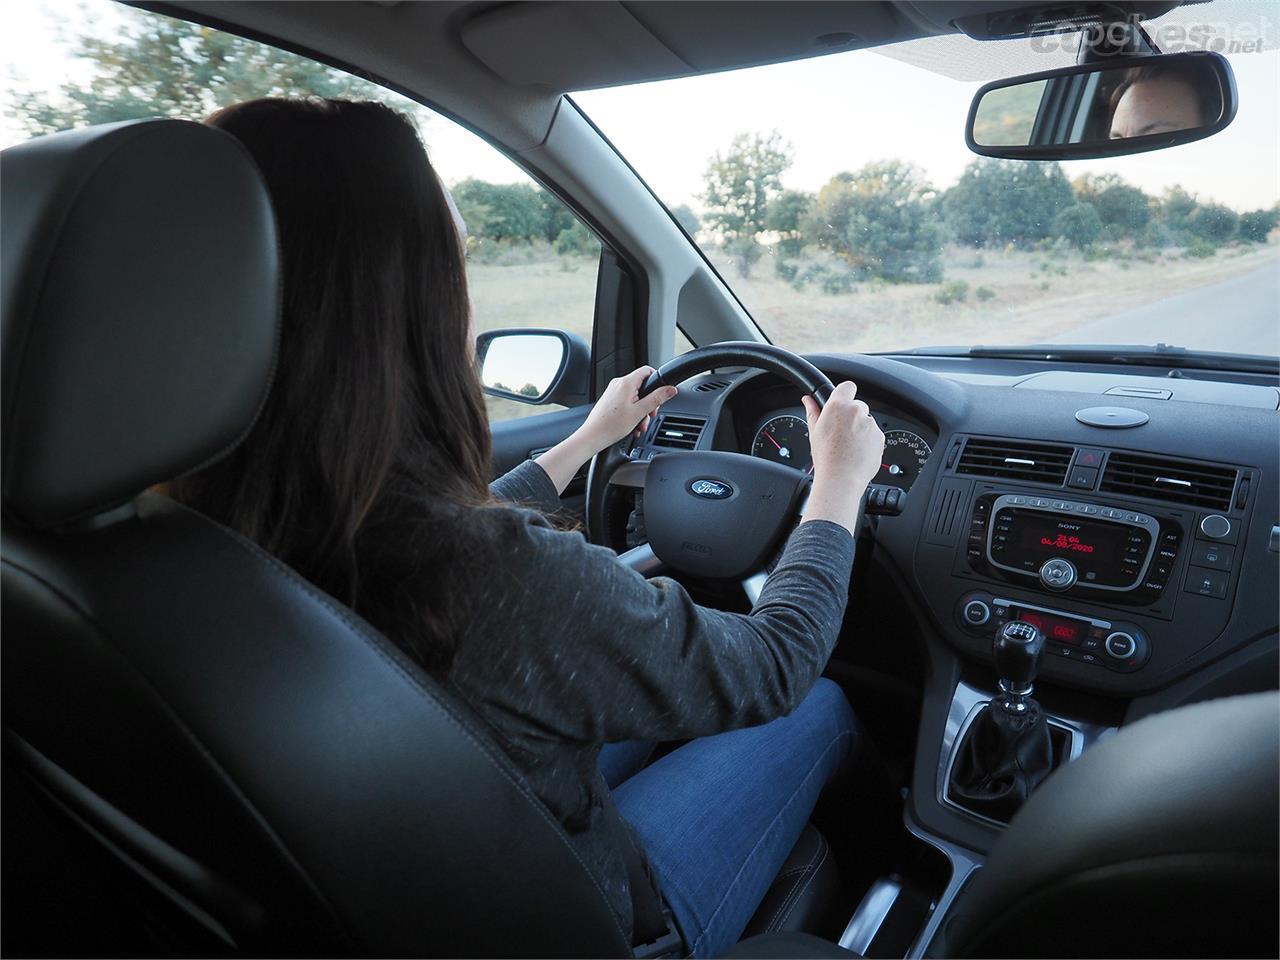 Un estudio asegura que el interior de un coche puede estar más